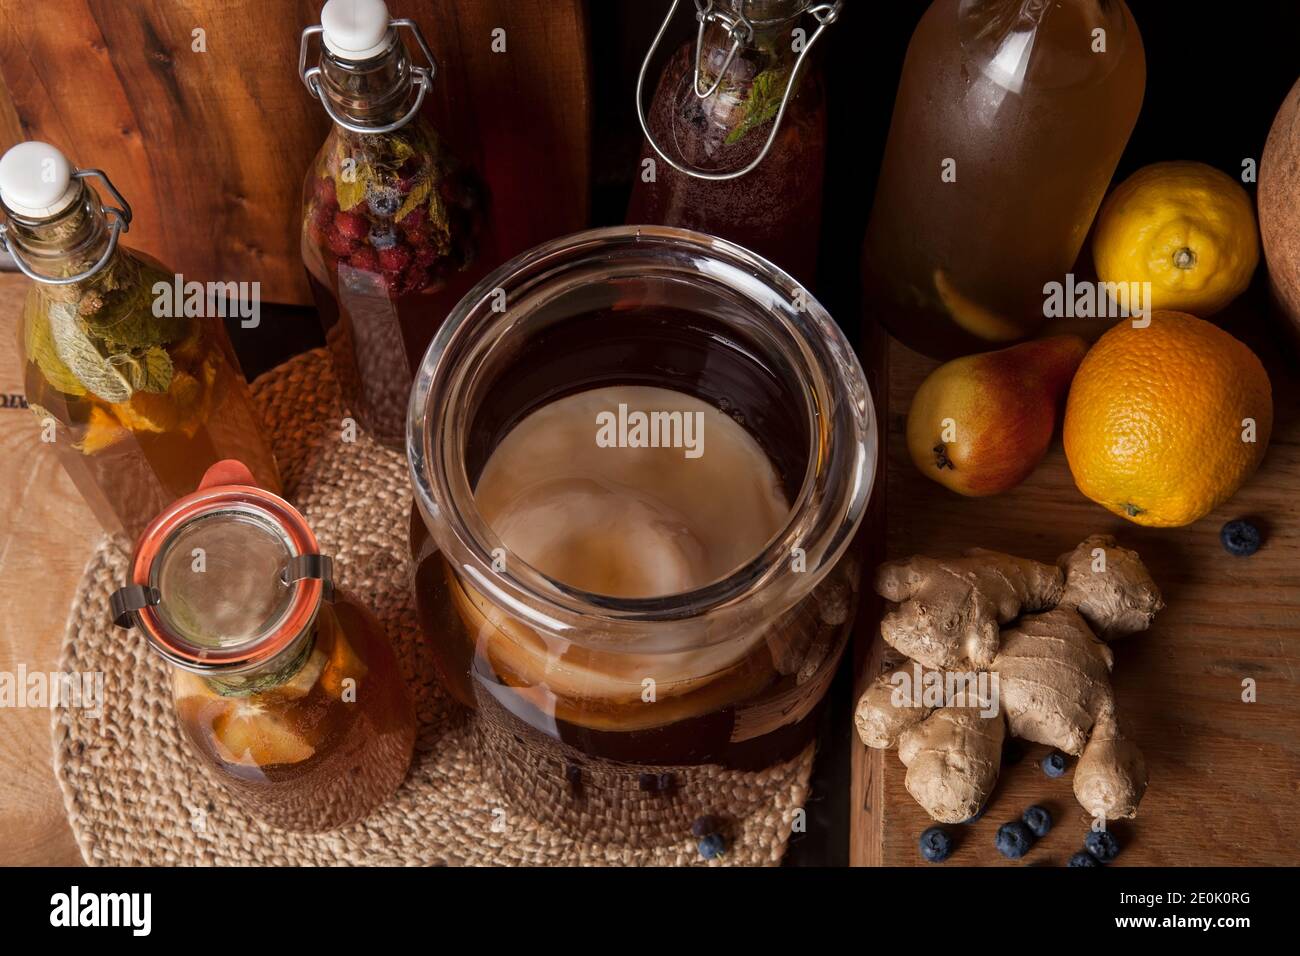 Kombucha (anche fungo del tè, fungo del tè, o fungo manchuriano) - tè alla frutta fermentato con aromi diversi. Sano probiotico naturale aromatizzato Foto Stock